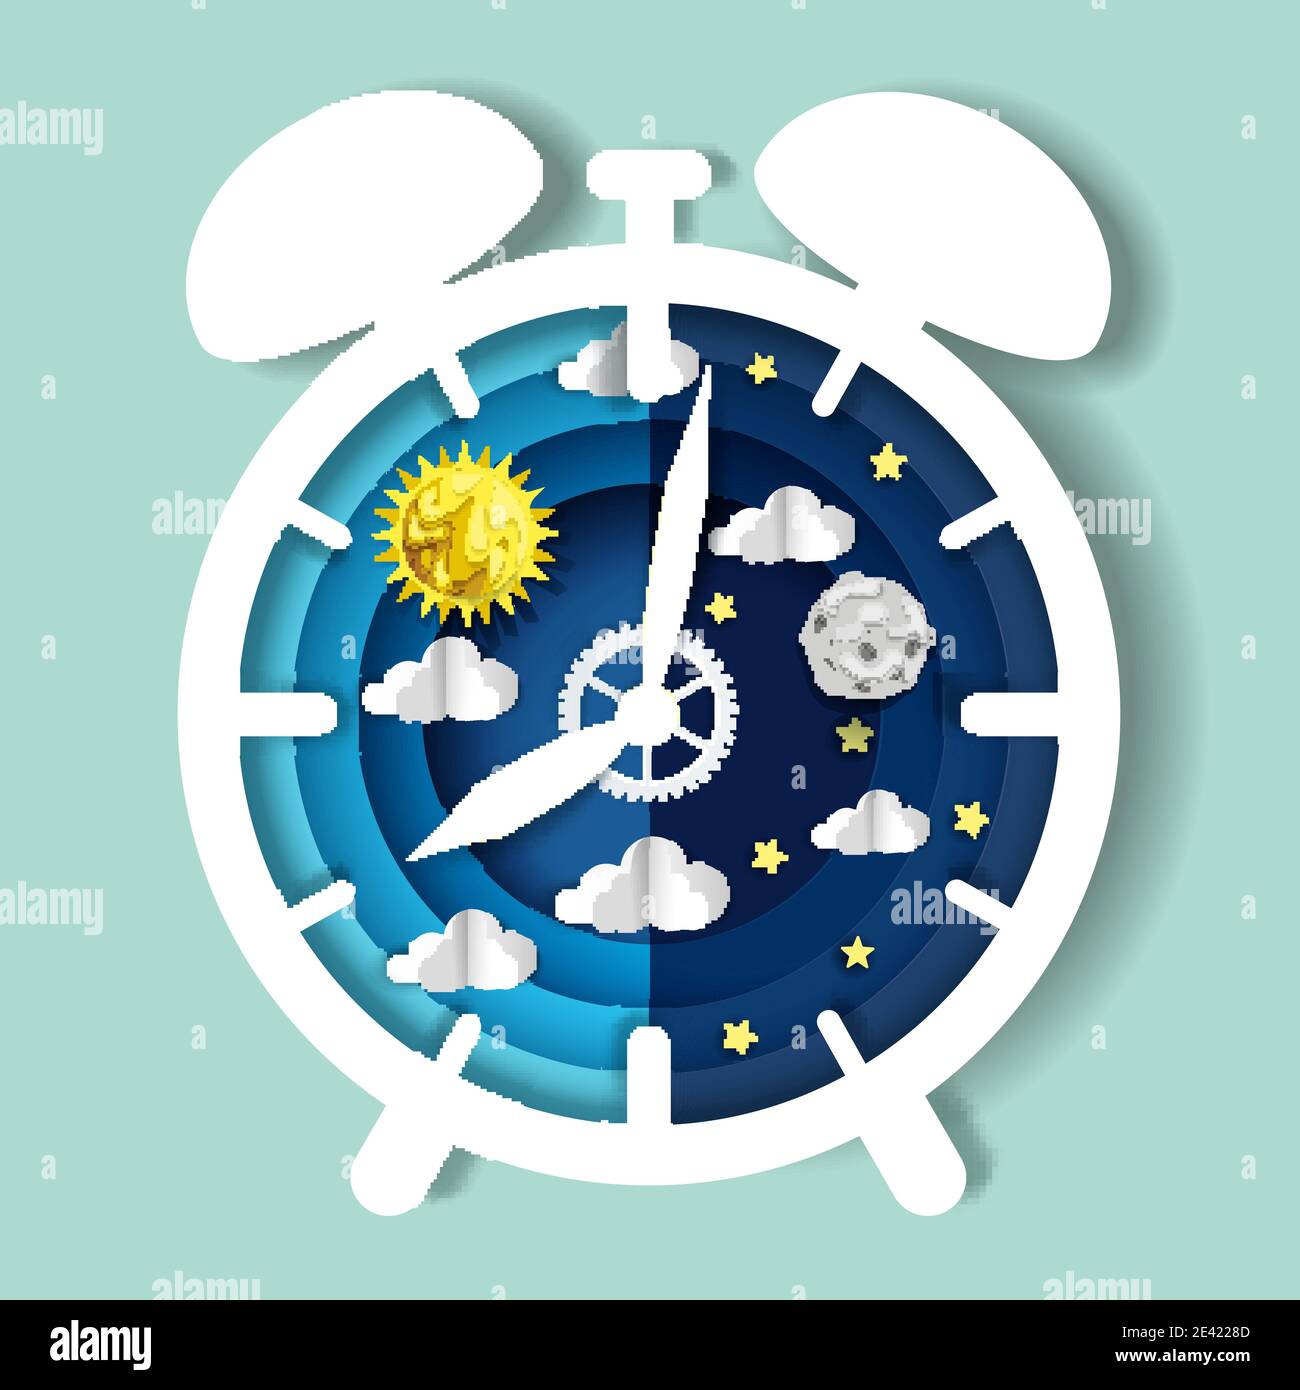 Papierschnitt Handwerk Stil Uhr mit Tag und Nacht Himmel auf dem Zifferblatt, Vektor-Illustration. Einschaltzyklus. Zirkadianer Rhythmus. Stock Vektor